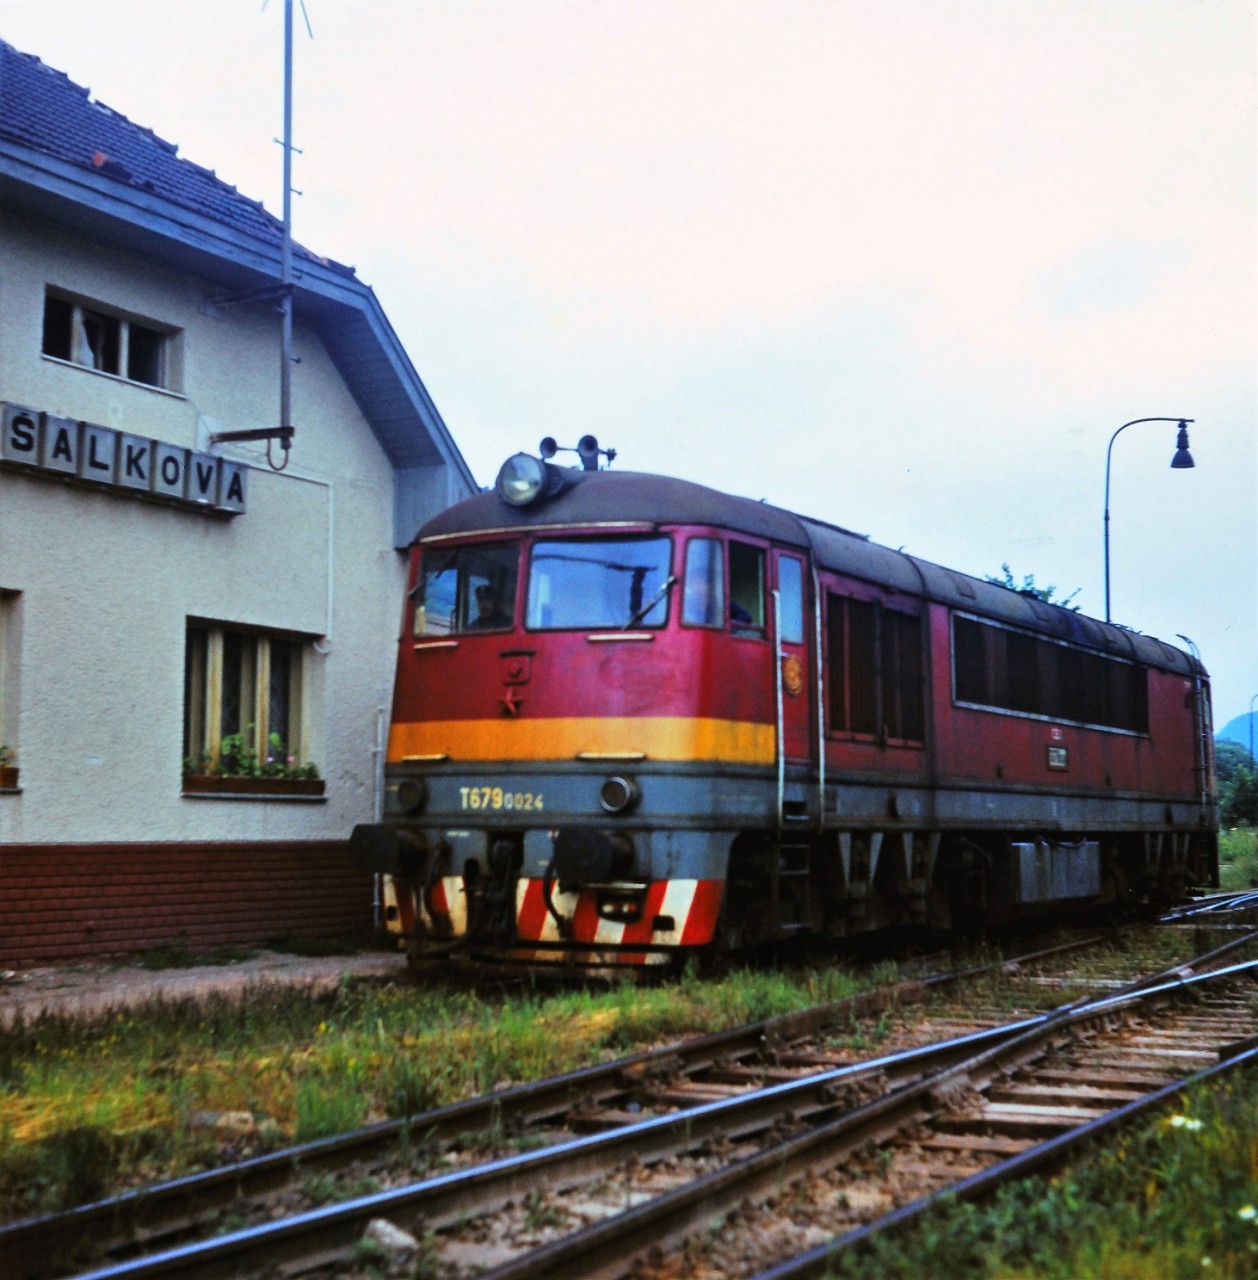 T679.0024, ervenec 1983, alkov, foto: L.Kunc